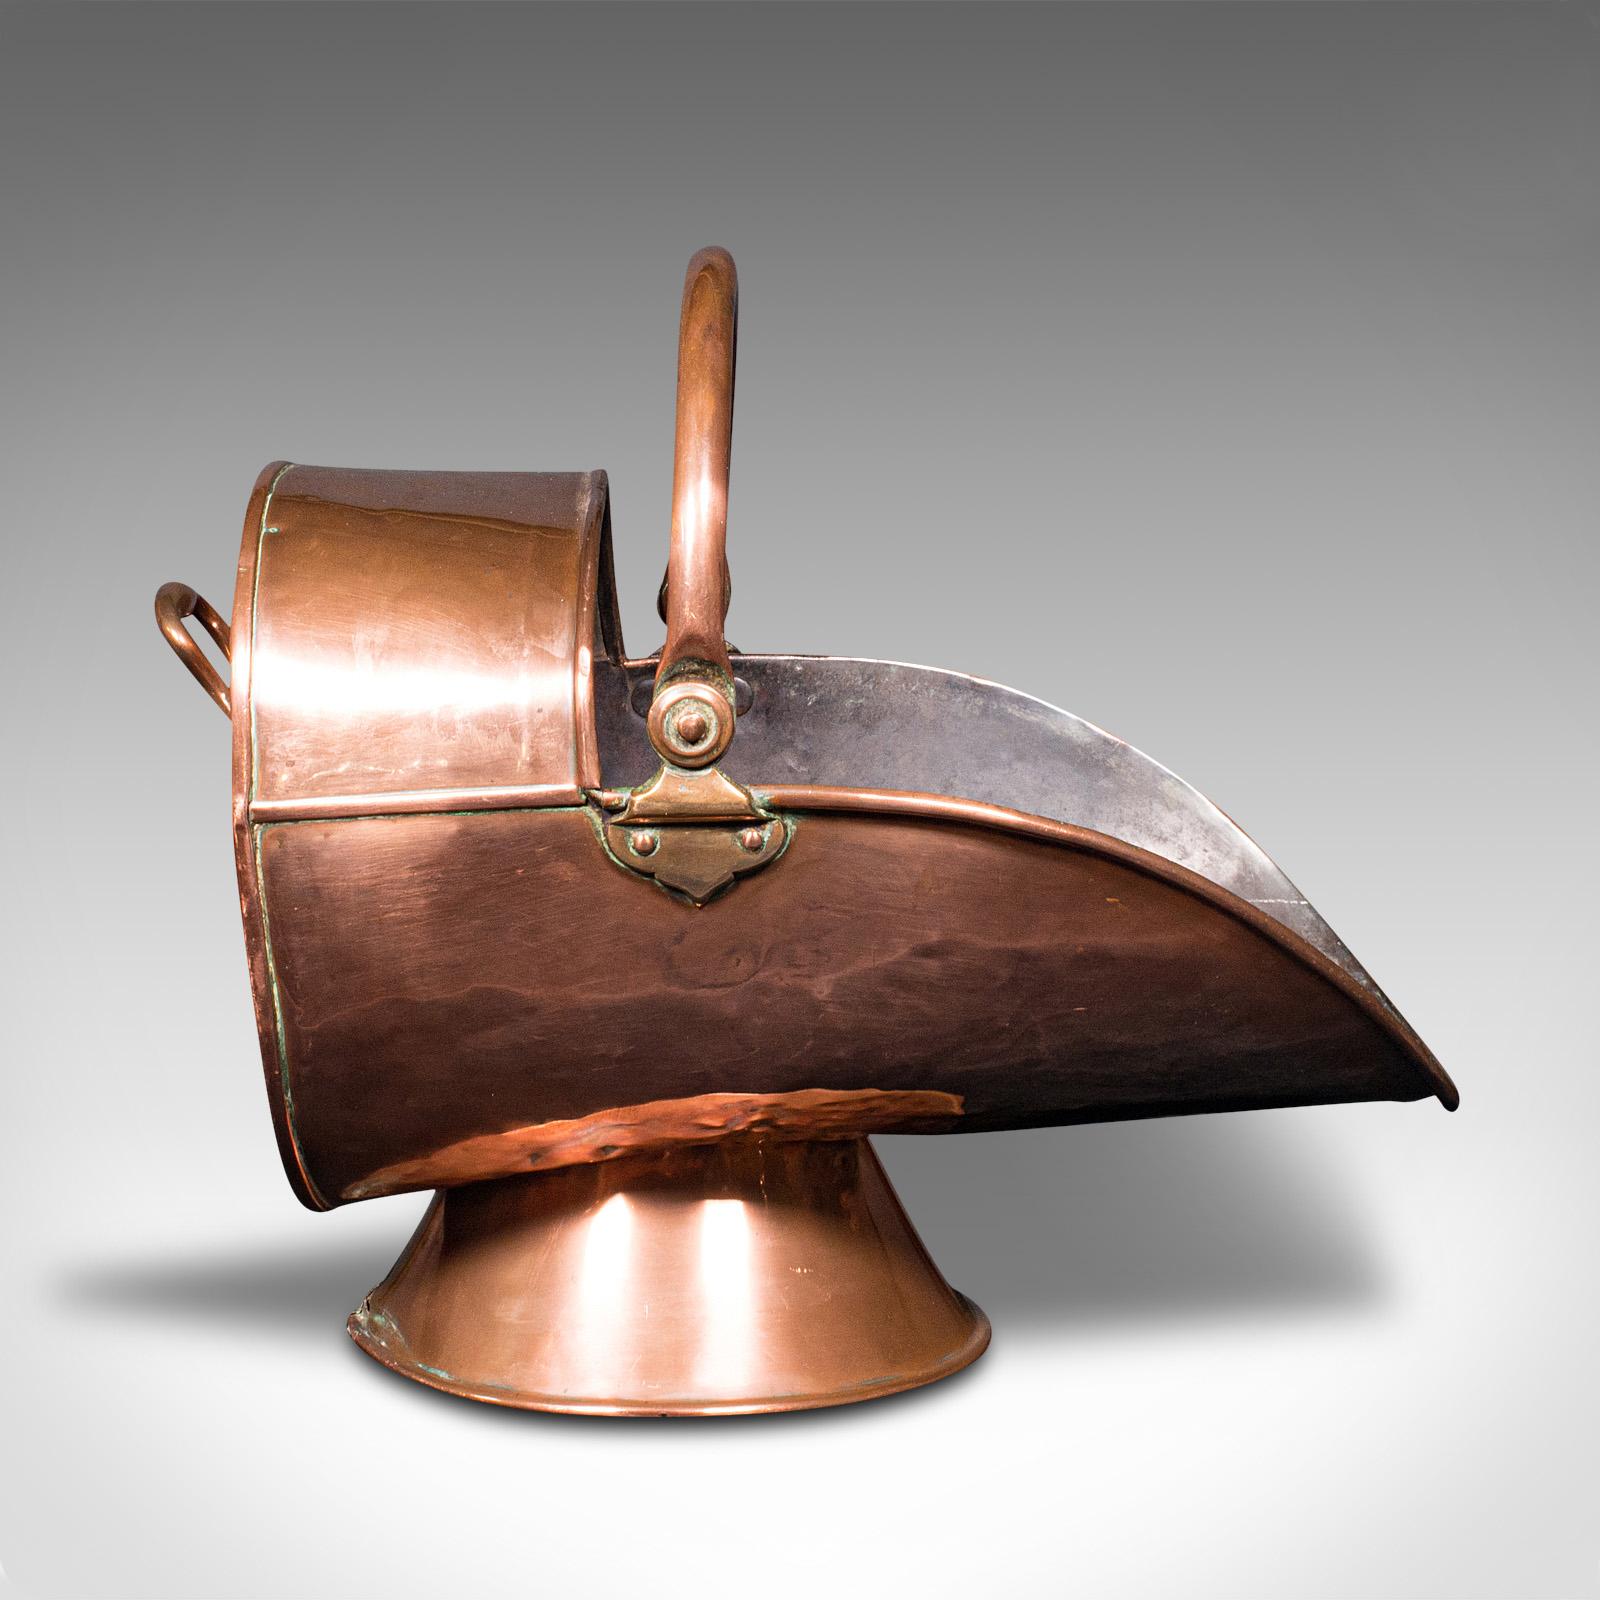 Il s'agit d'un ancien brasero à casque. Un scuttle ou bac à charbon anglais en cuivre, datant de la période victorienne, vers 1870.

Délicieux scuttle en forme de casque avec une brillance agréable
Présente une patine vieillie souhaitable sur